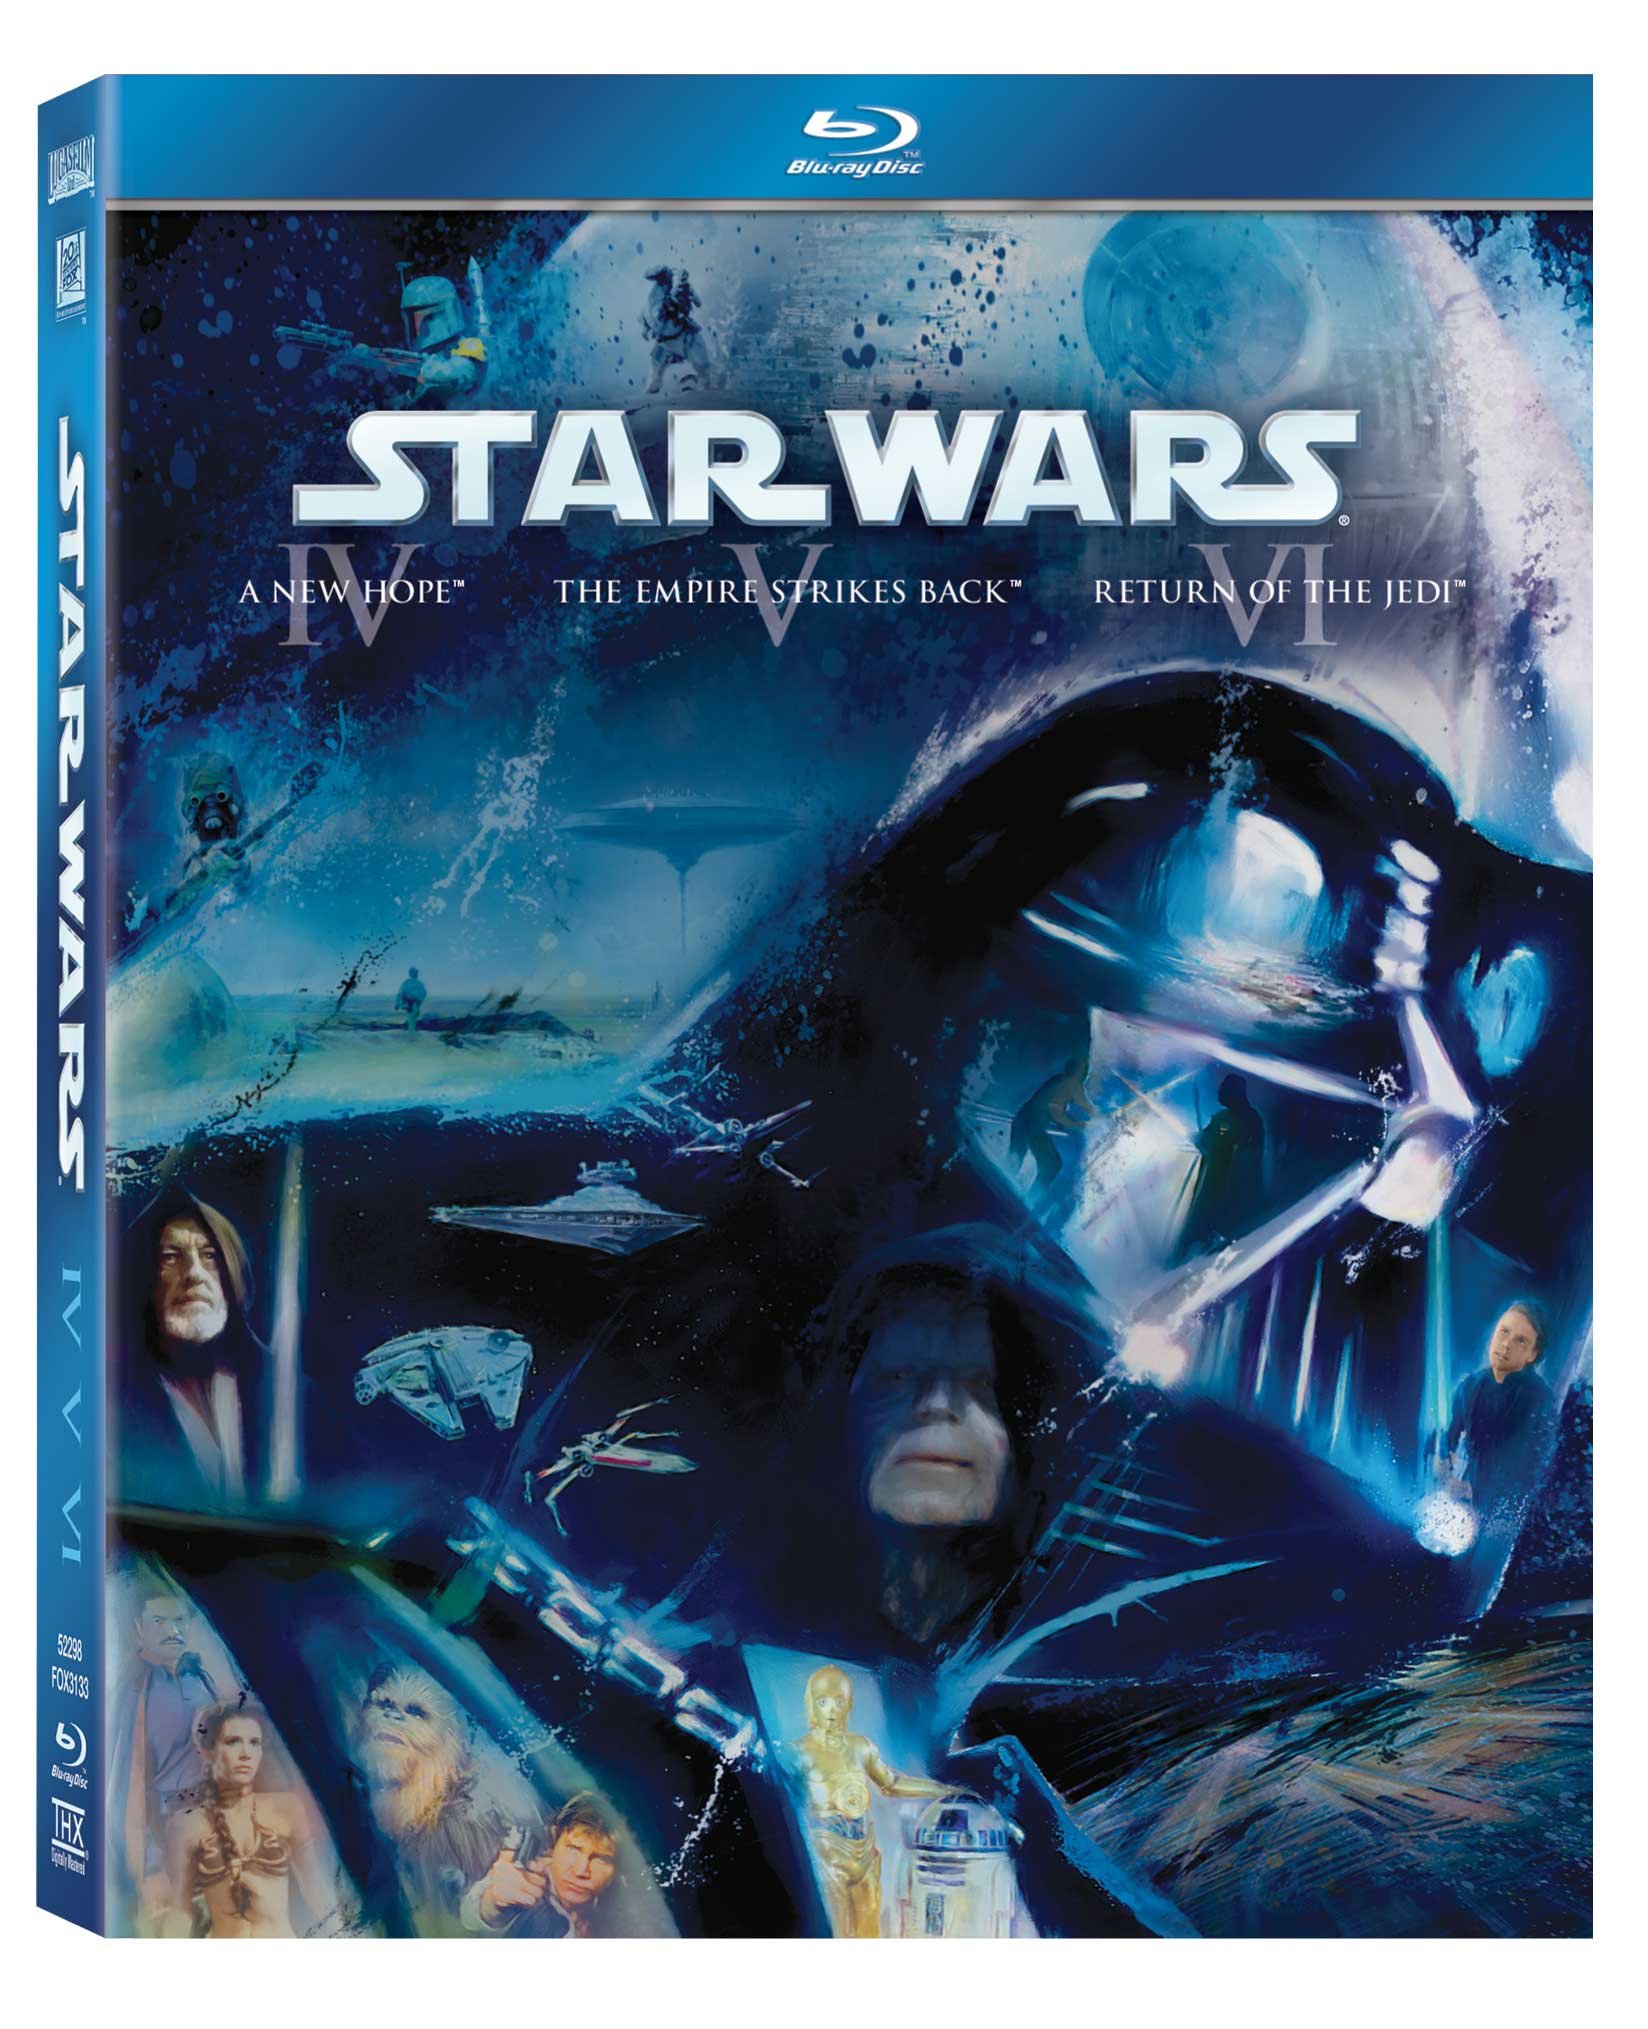 star-wars-original-trilogy-episode-iv-a-new-hope-episode-v-the-empire-strikes-back-episode-vi-return-of-the-jedi-3-disc-box-set